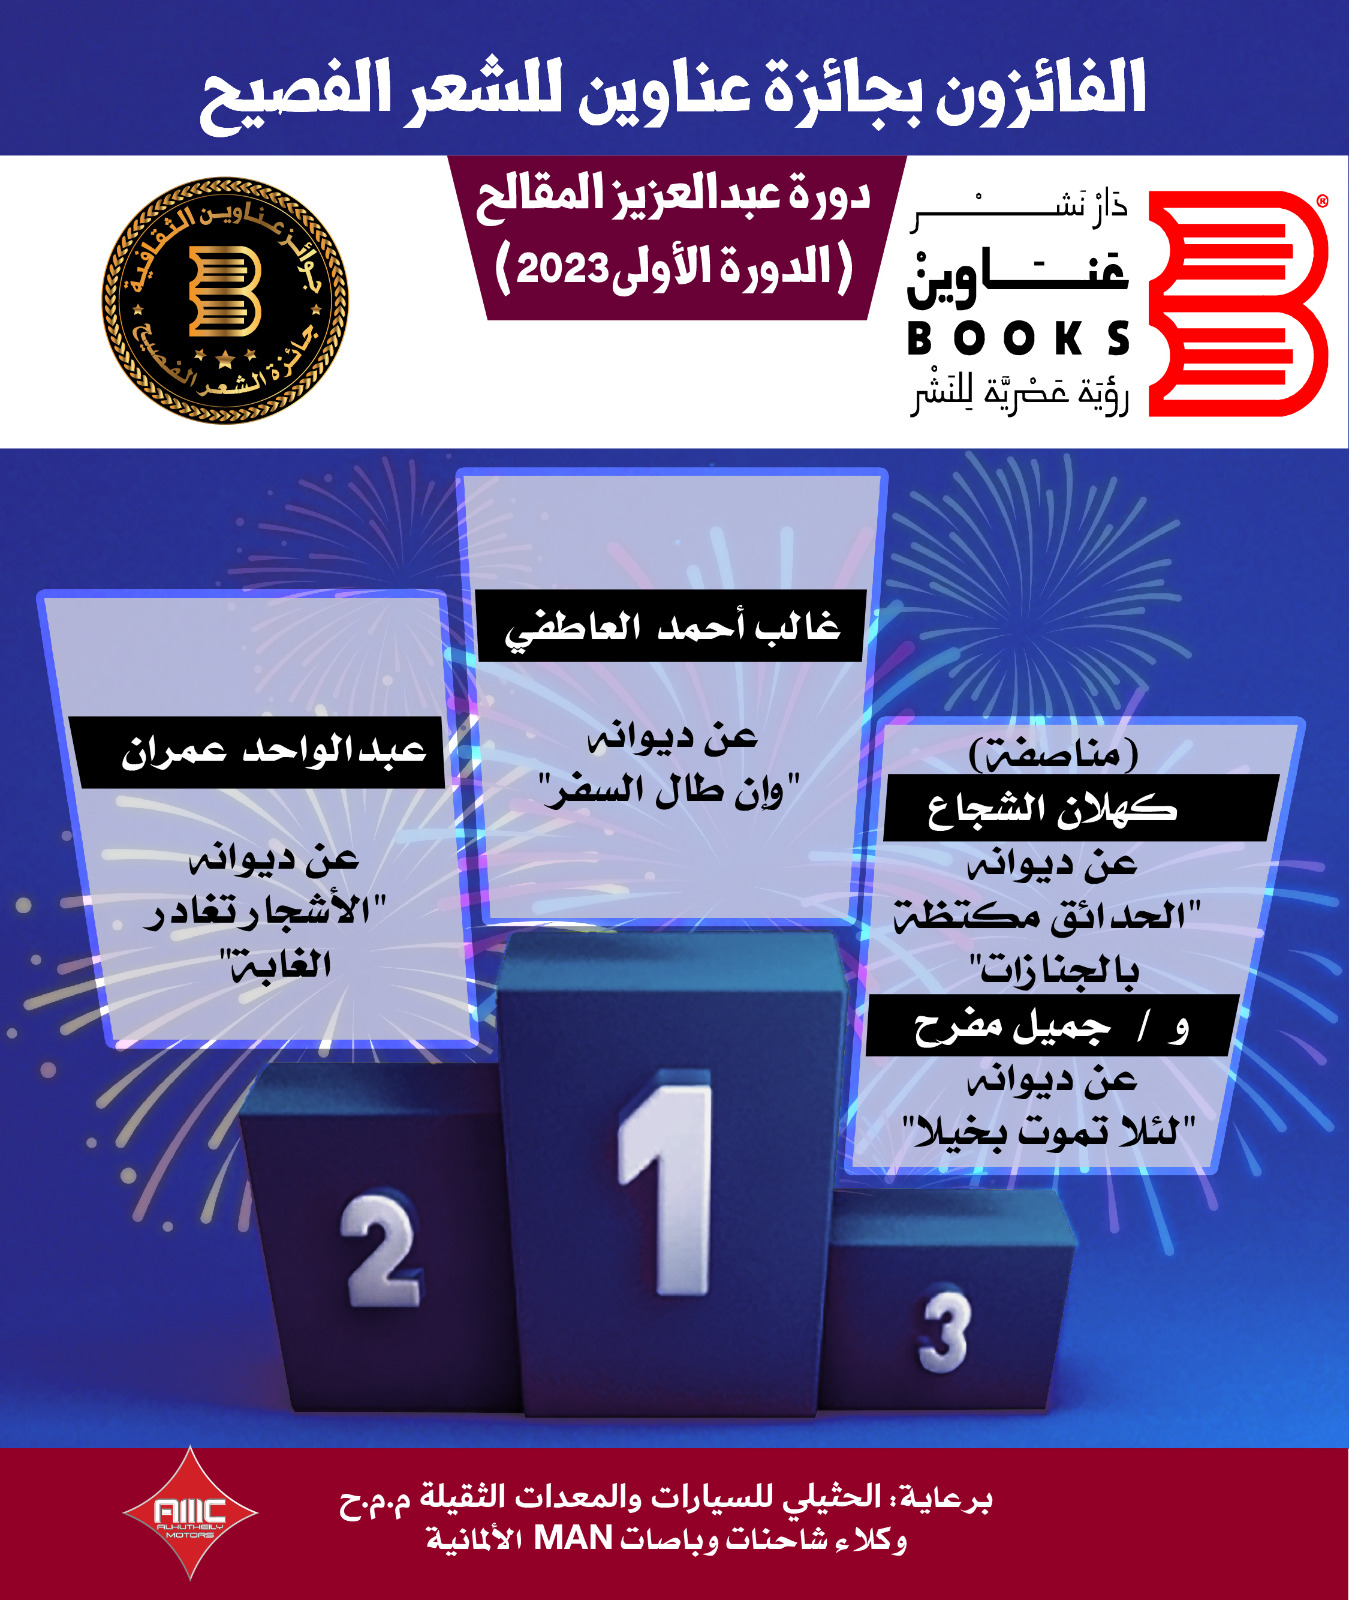 إعلان أسماء الفائزين بأكبر جائزة أدبية يمنية في الرواية والشعر 